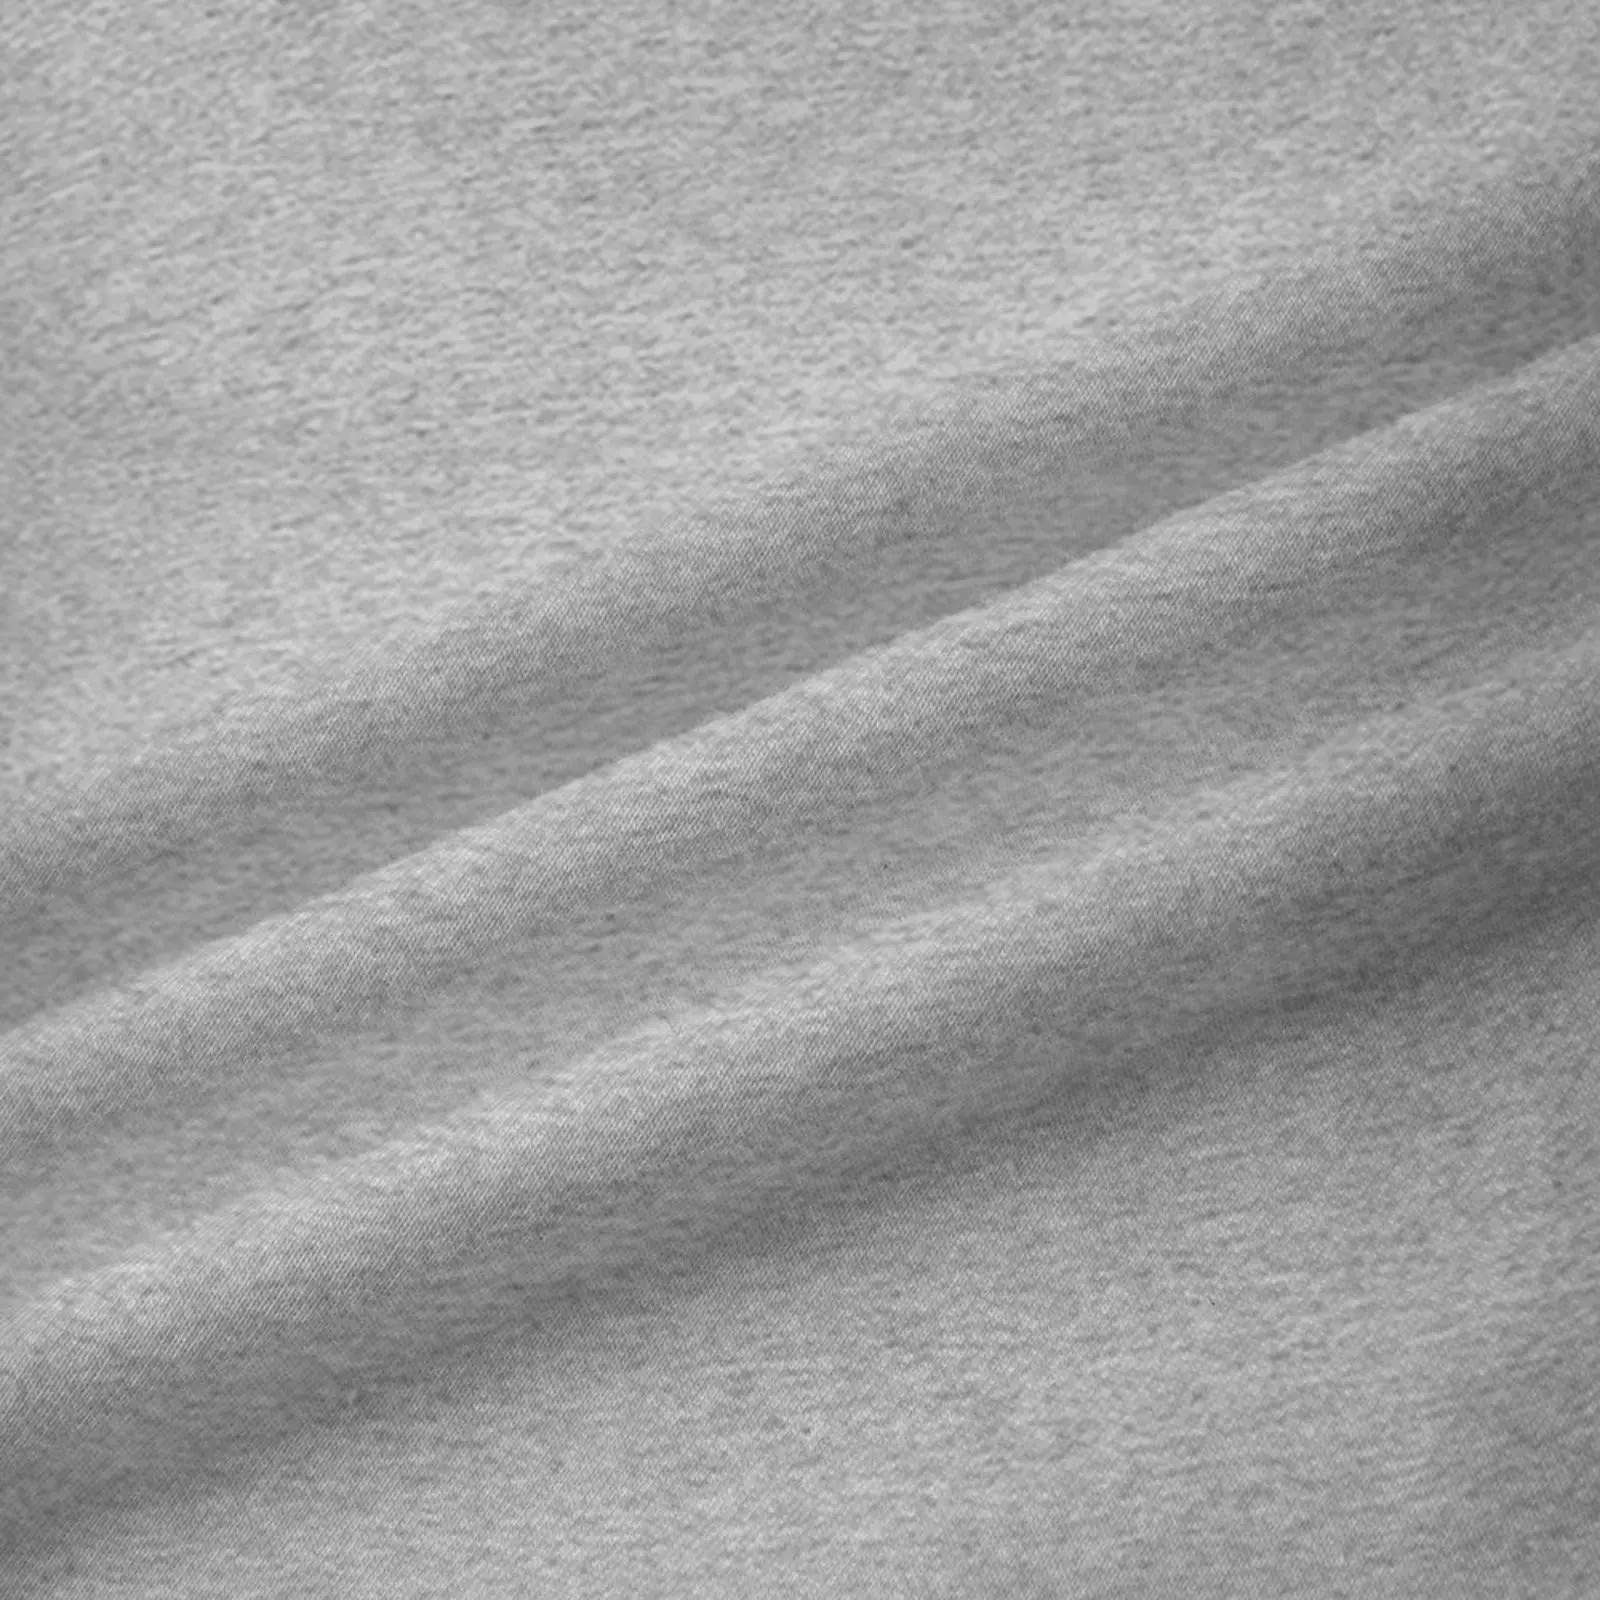 Noi Pratt Institute Fluture Logo Hanorac barbati sweat-shirt set de iarna haine de toamna barbati de toamna haine treninguri